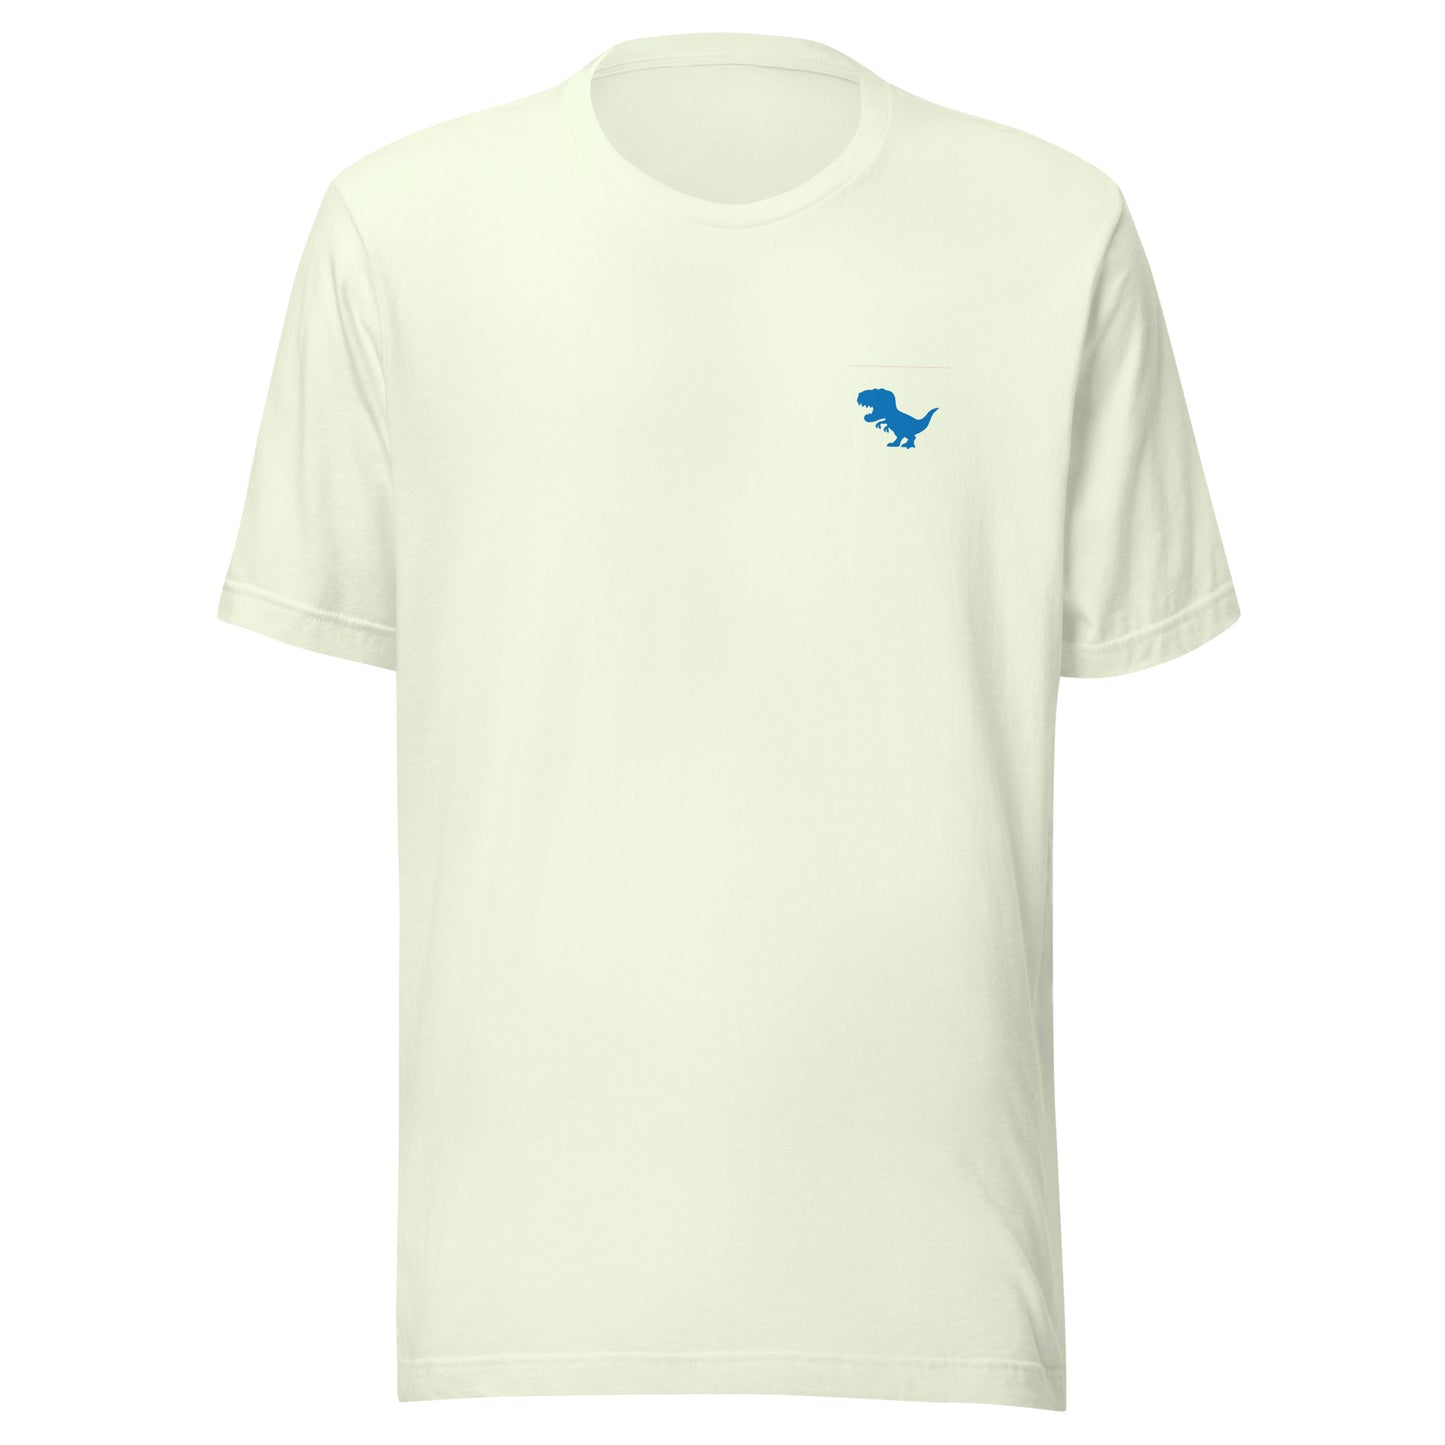 Unisex AUTILOVE T-shirt